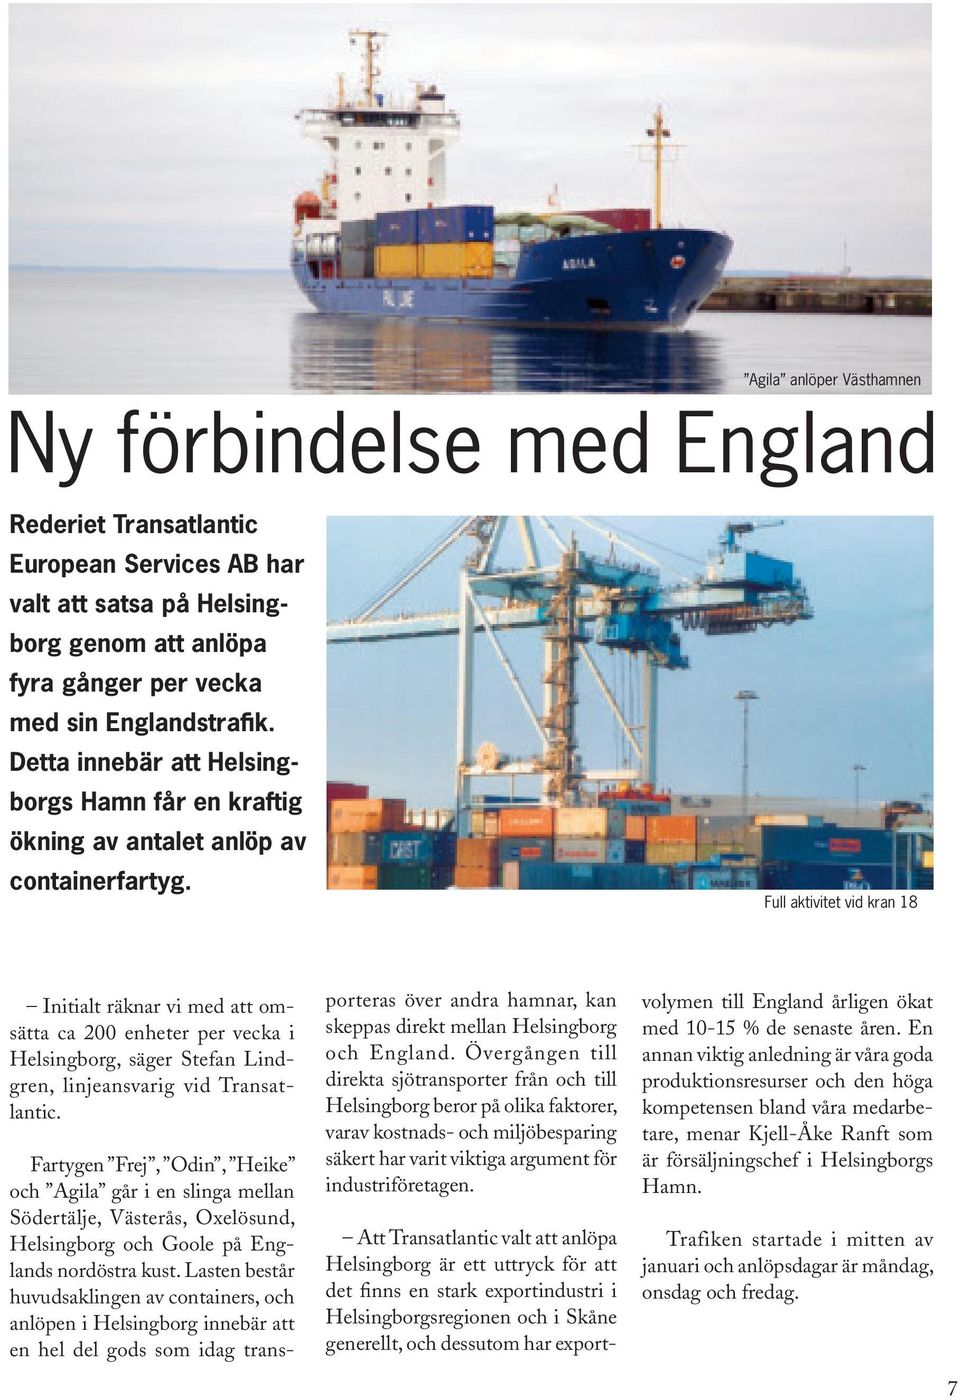 Full aktivitet vid kran 18 Initialt räknar vi med att omsätta ca 200 enheter per vecka i Helsingborg, säger Stefan Lindgren, linjeansvarig vid Transatlantic.